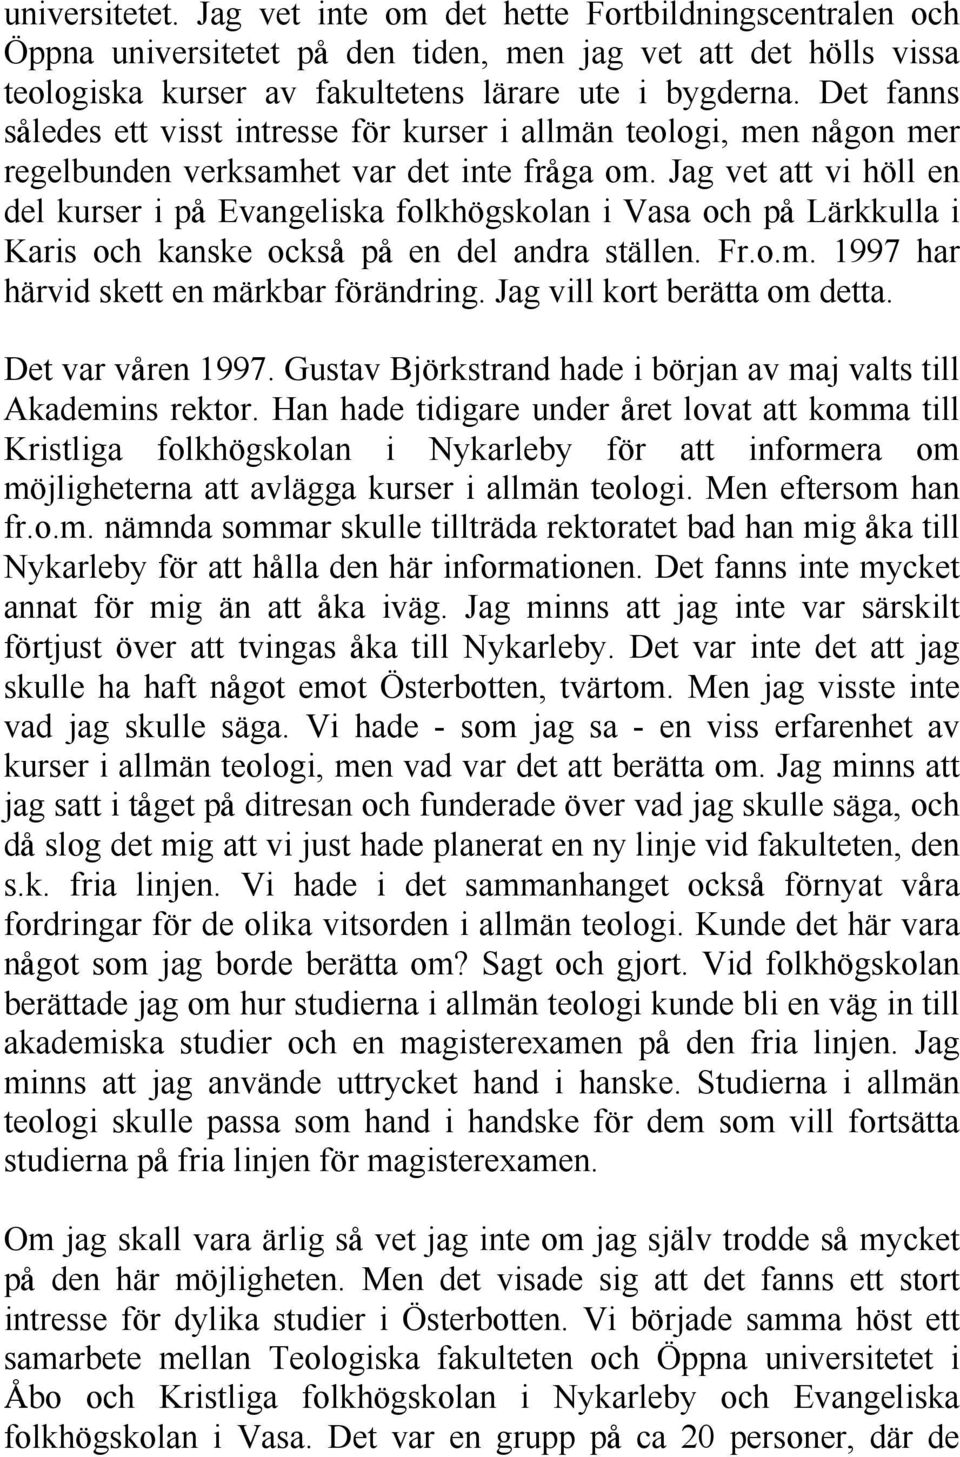 Jag vet att vi höll en del kurser i pd Evangeliska folkhögskolan i Vasa och pd Lärkkulla i Karis och kanske ocksd pd en del andra ställen. Fr.o.m. 1997 har härvid skett en märkbar förändring.